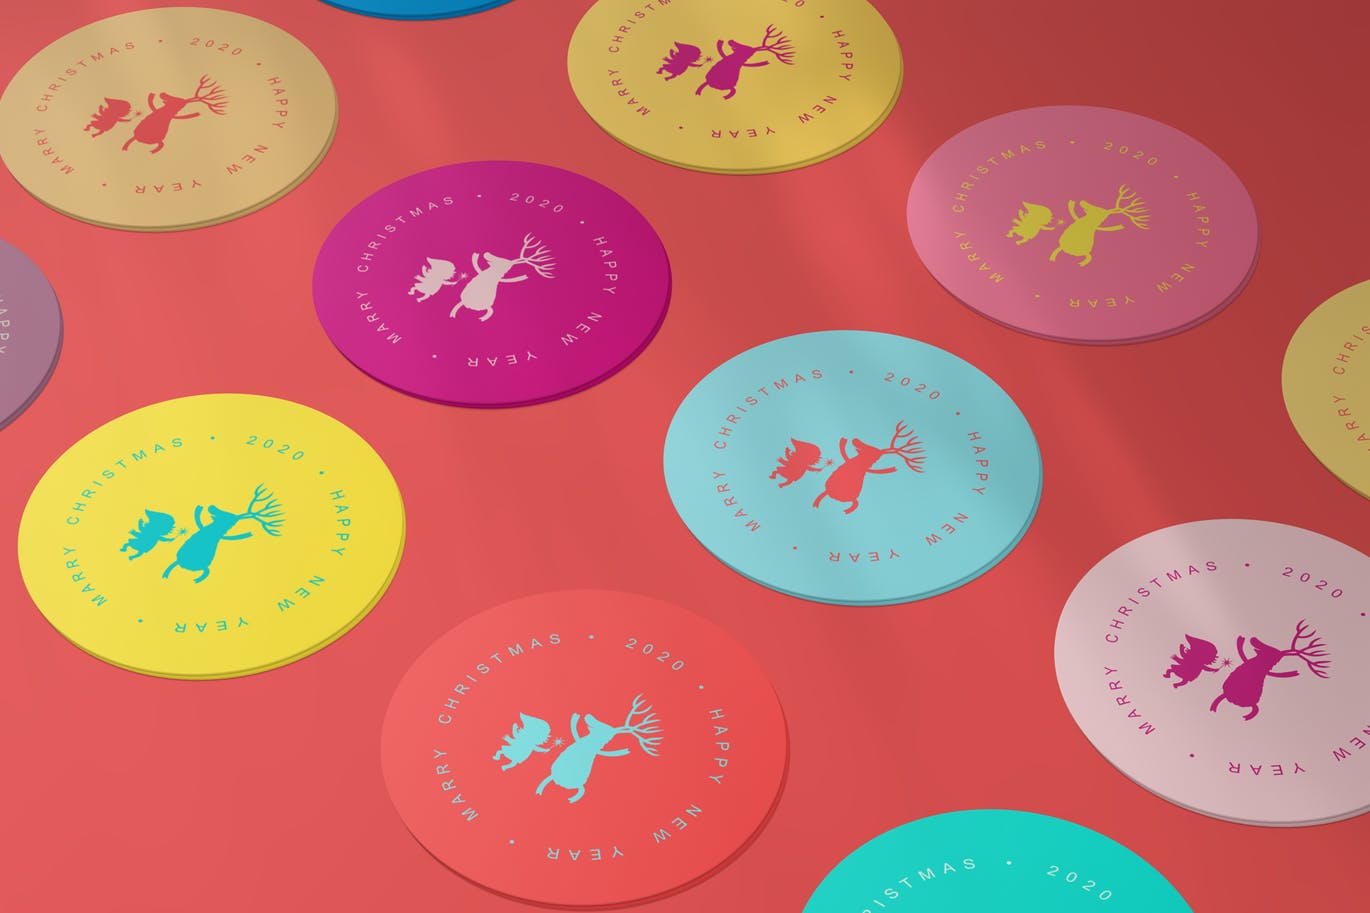 圆形卡片/贴纸设计效果图样机蚂蚁素材精选v1 Round Cards / Stickers Mock-Ups Vol.1插图